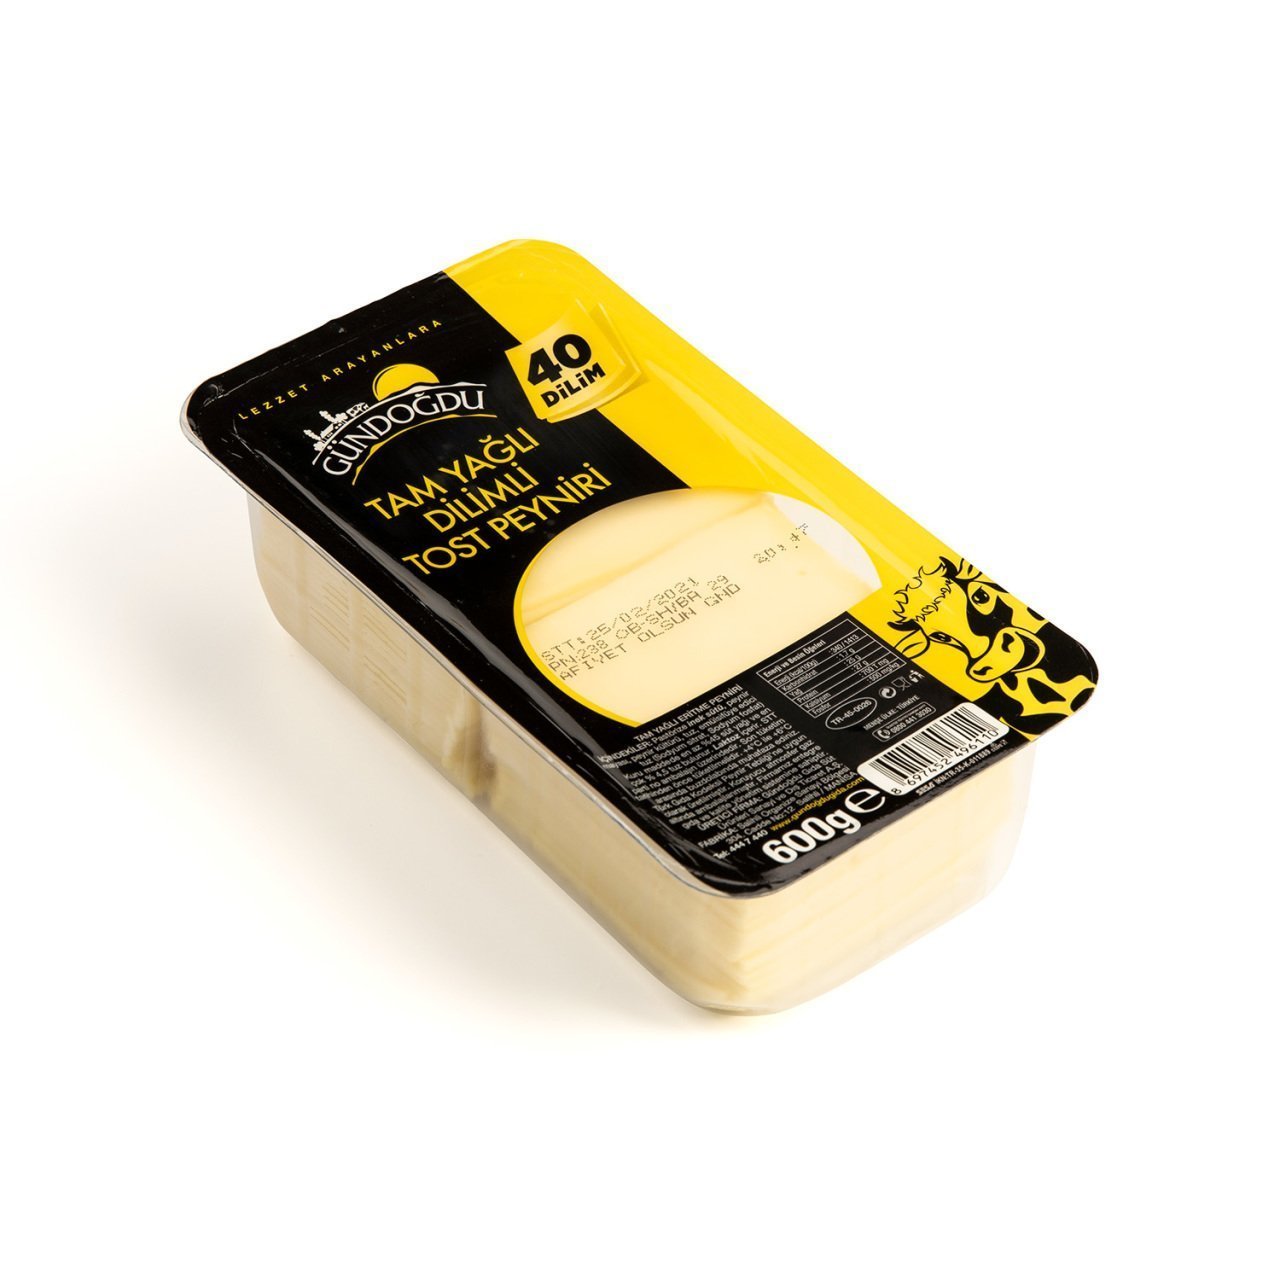 Gündoğdu Dilimli Tost Peyniri 600gr